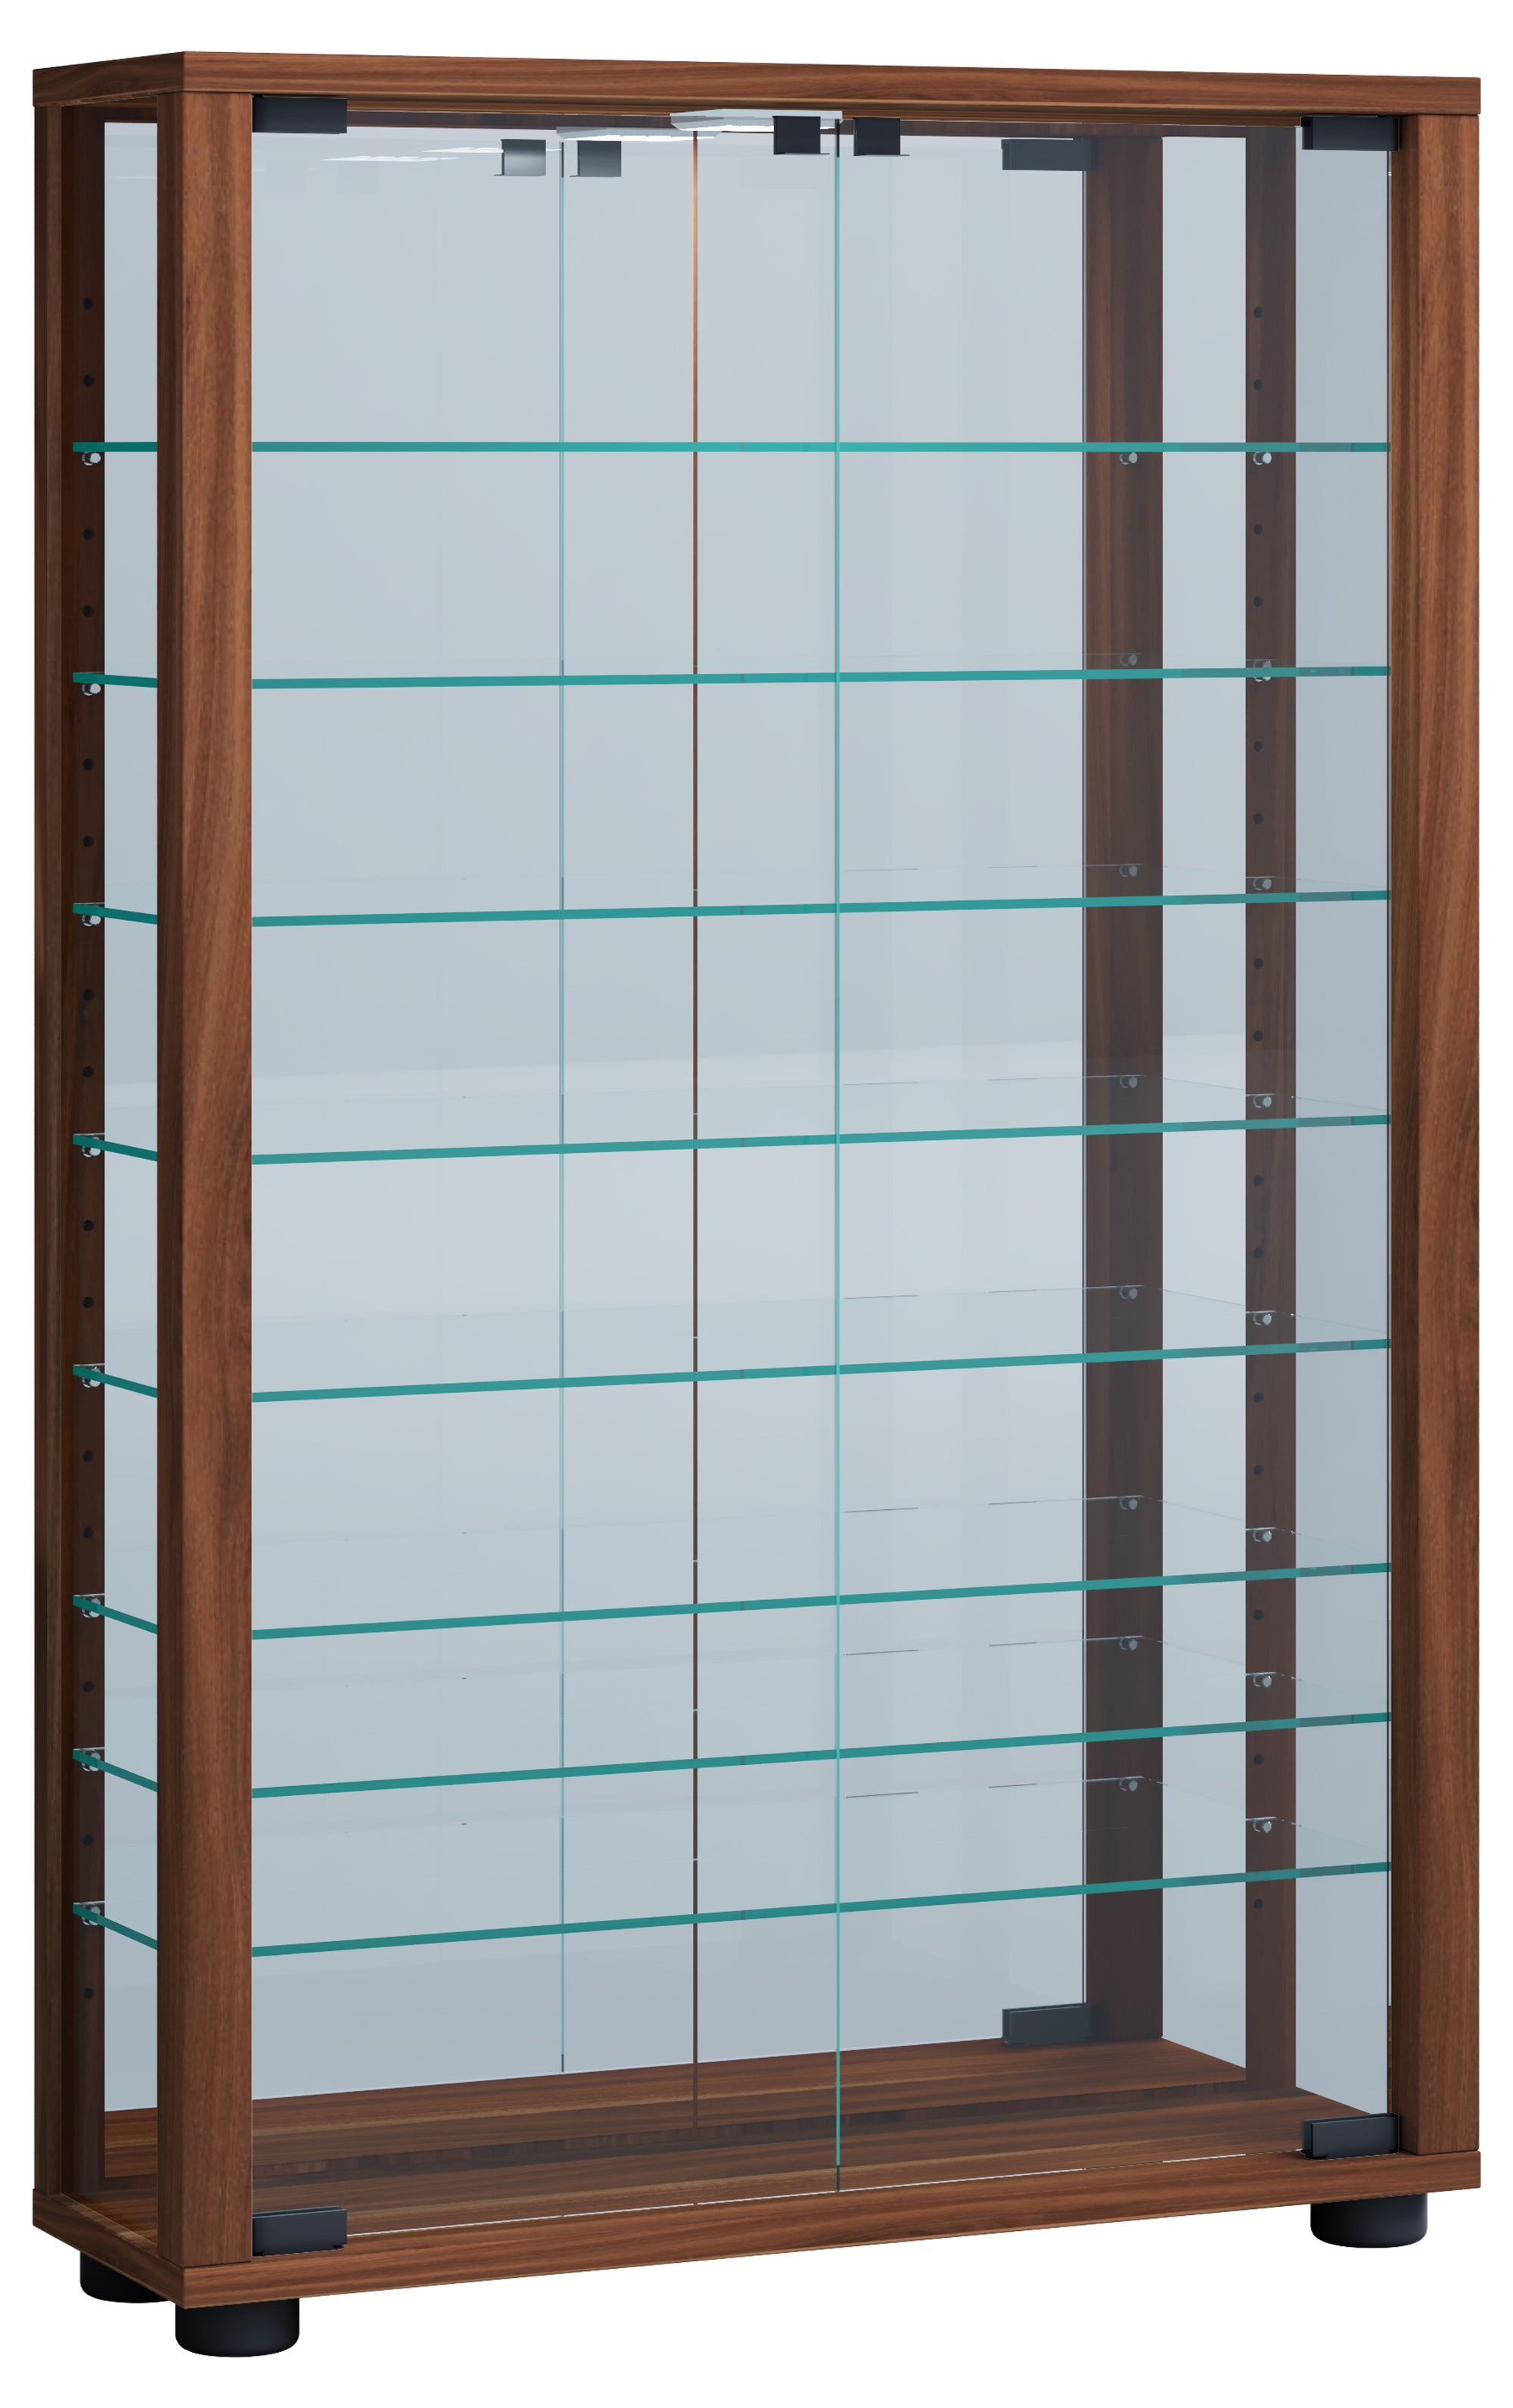 6: Gulv Vitrineskab "Lumo Mini" Med Spejl | Inkl. Led Lys, 91 x 59 x 18 cm, farve: valnød brun